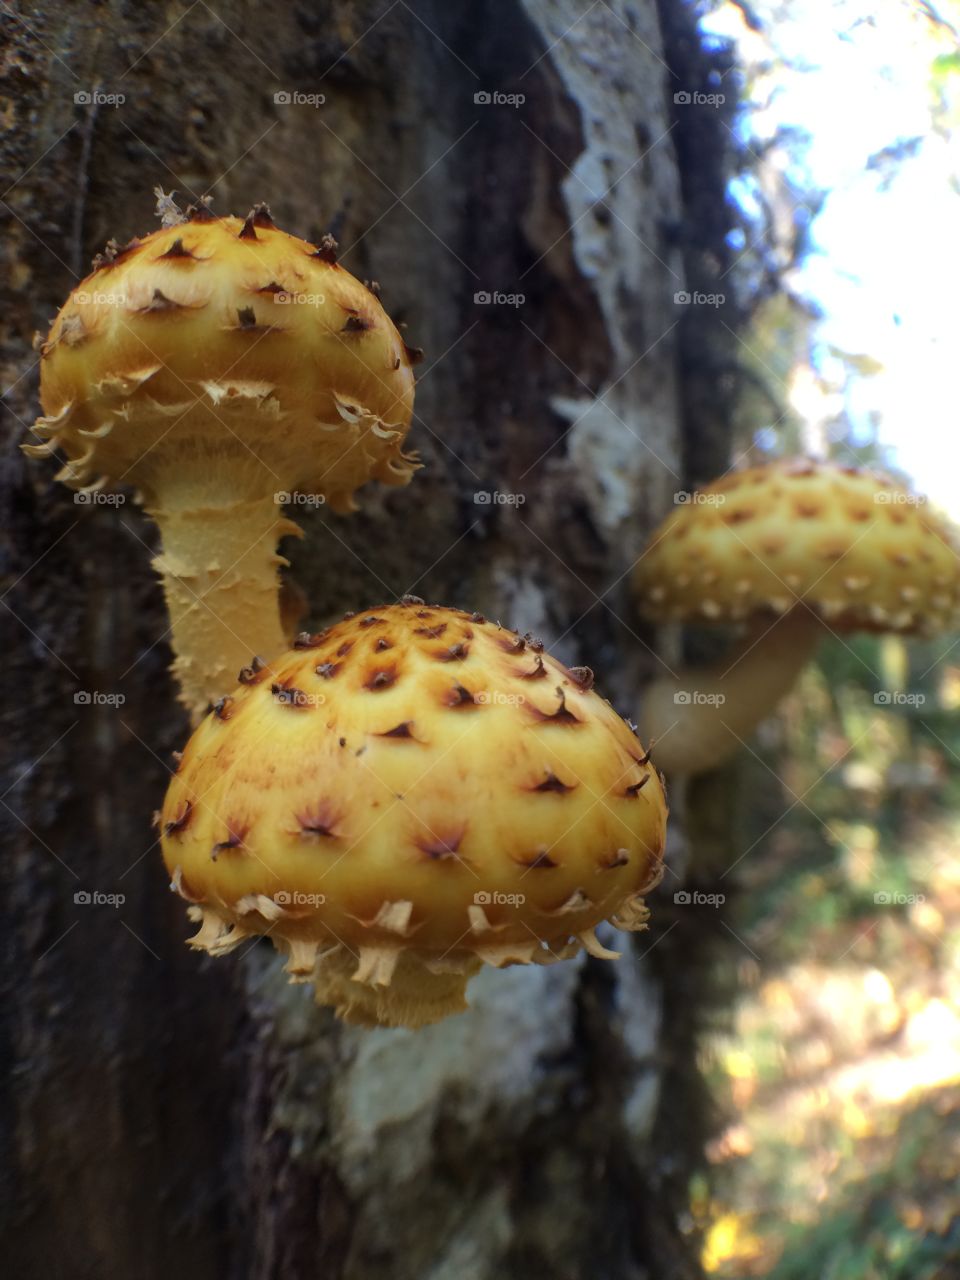 Scaly pholiota mushrooms. 